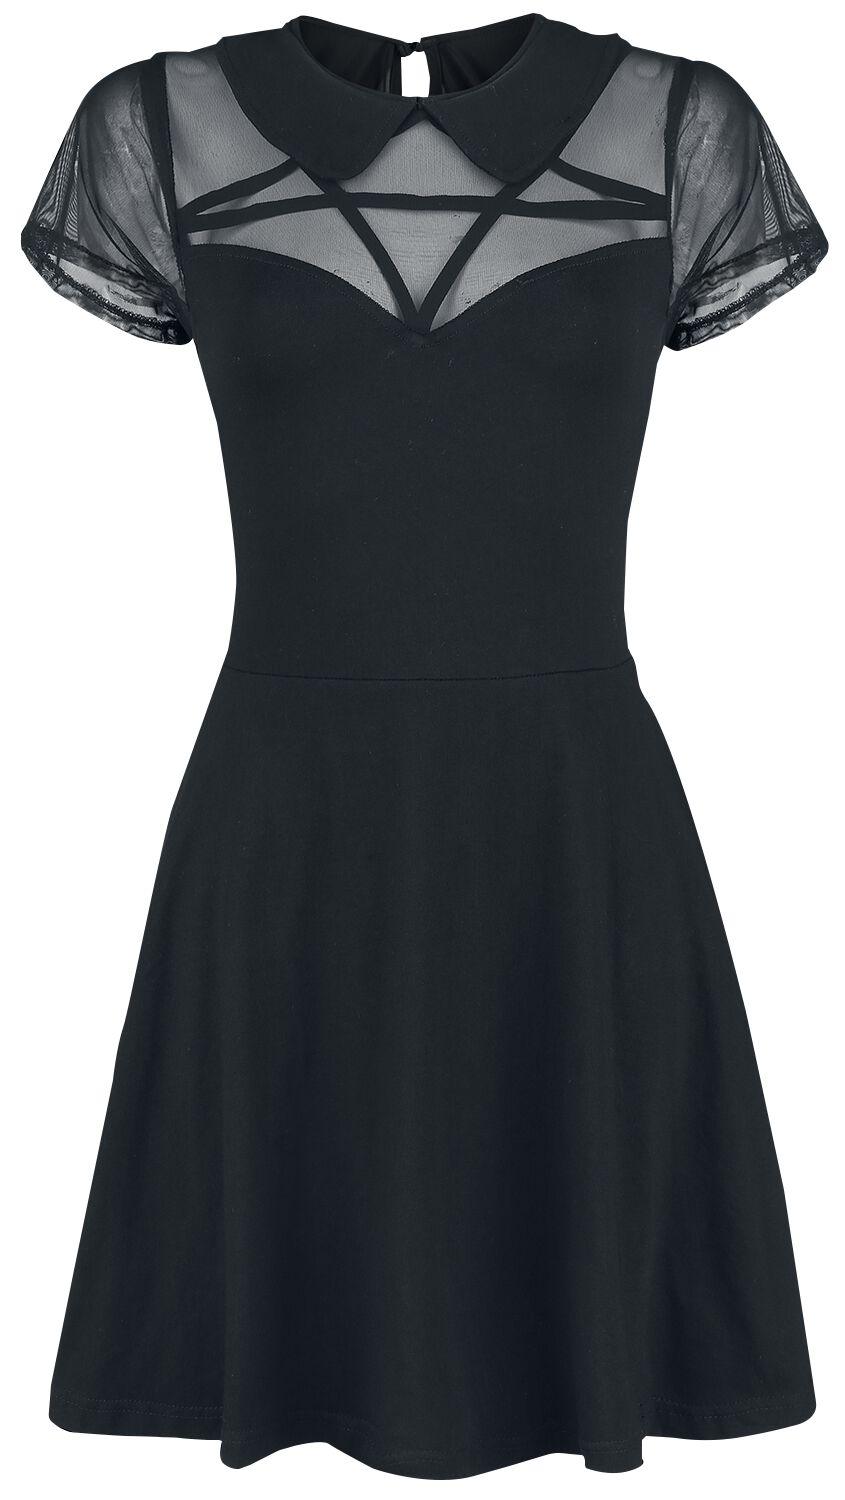 Heartless - Gothic Kurzes Kleid - Hex Wednesday Dress - S bis XL - für Damen - Größe XL - schwarz